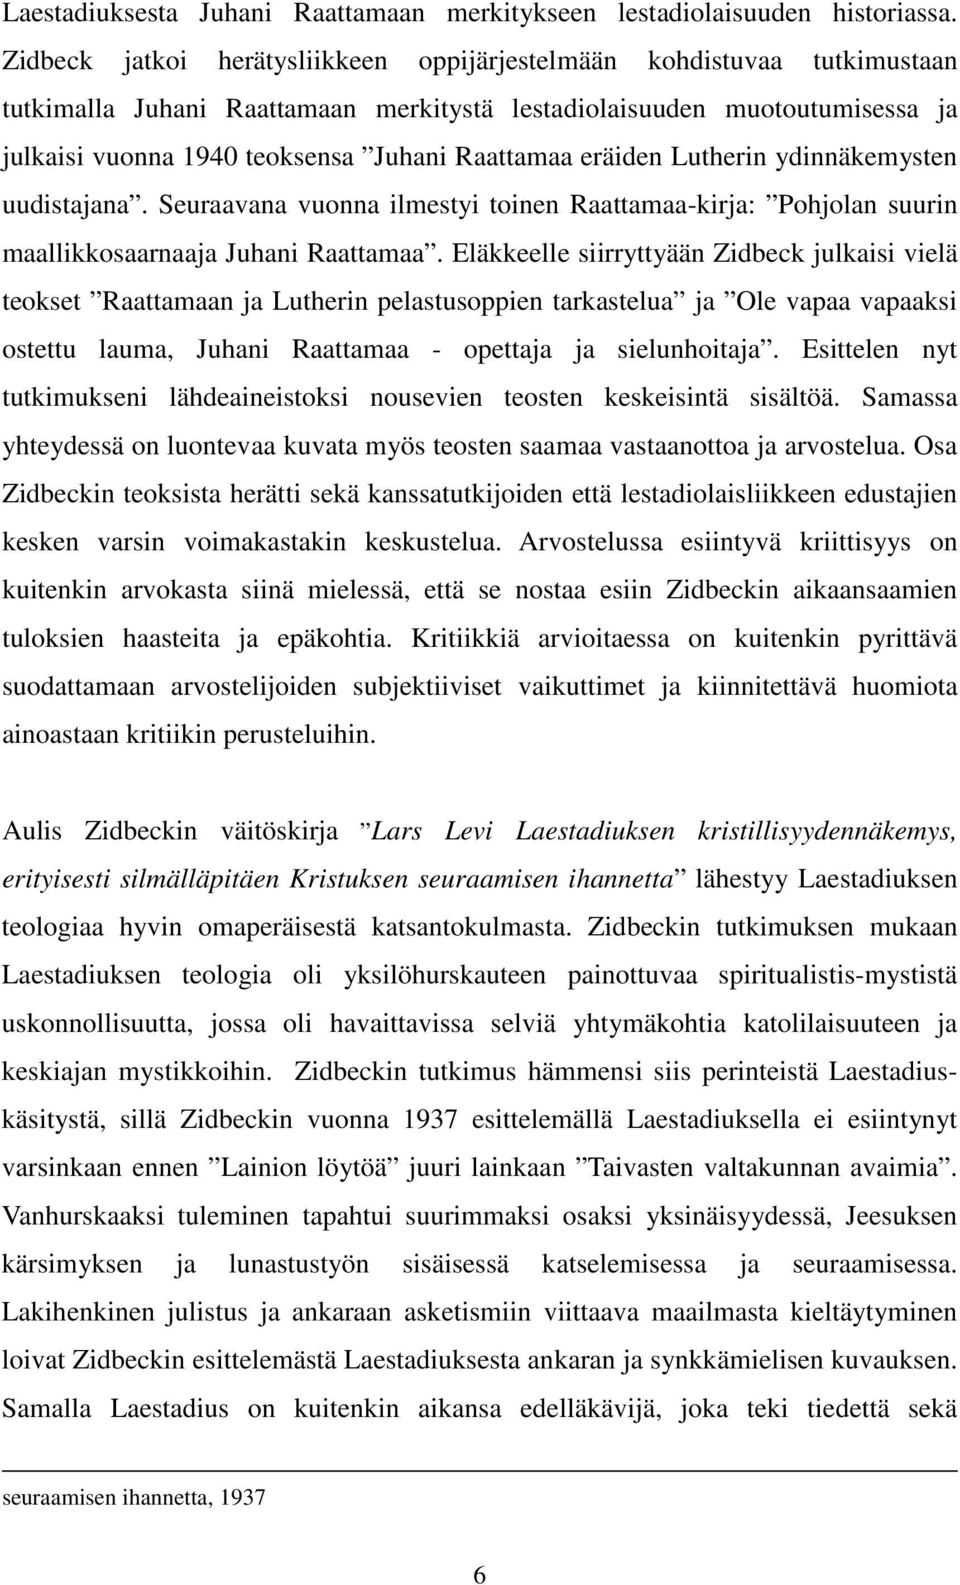 eräiden Lutherin ydinnäkemysten uudistajana. Seuraavana vuonna ilmestyi toinen Raattamaa-kirja: Pohjolan suurin maallikkosaarnaaja Juhani Raattamaa.